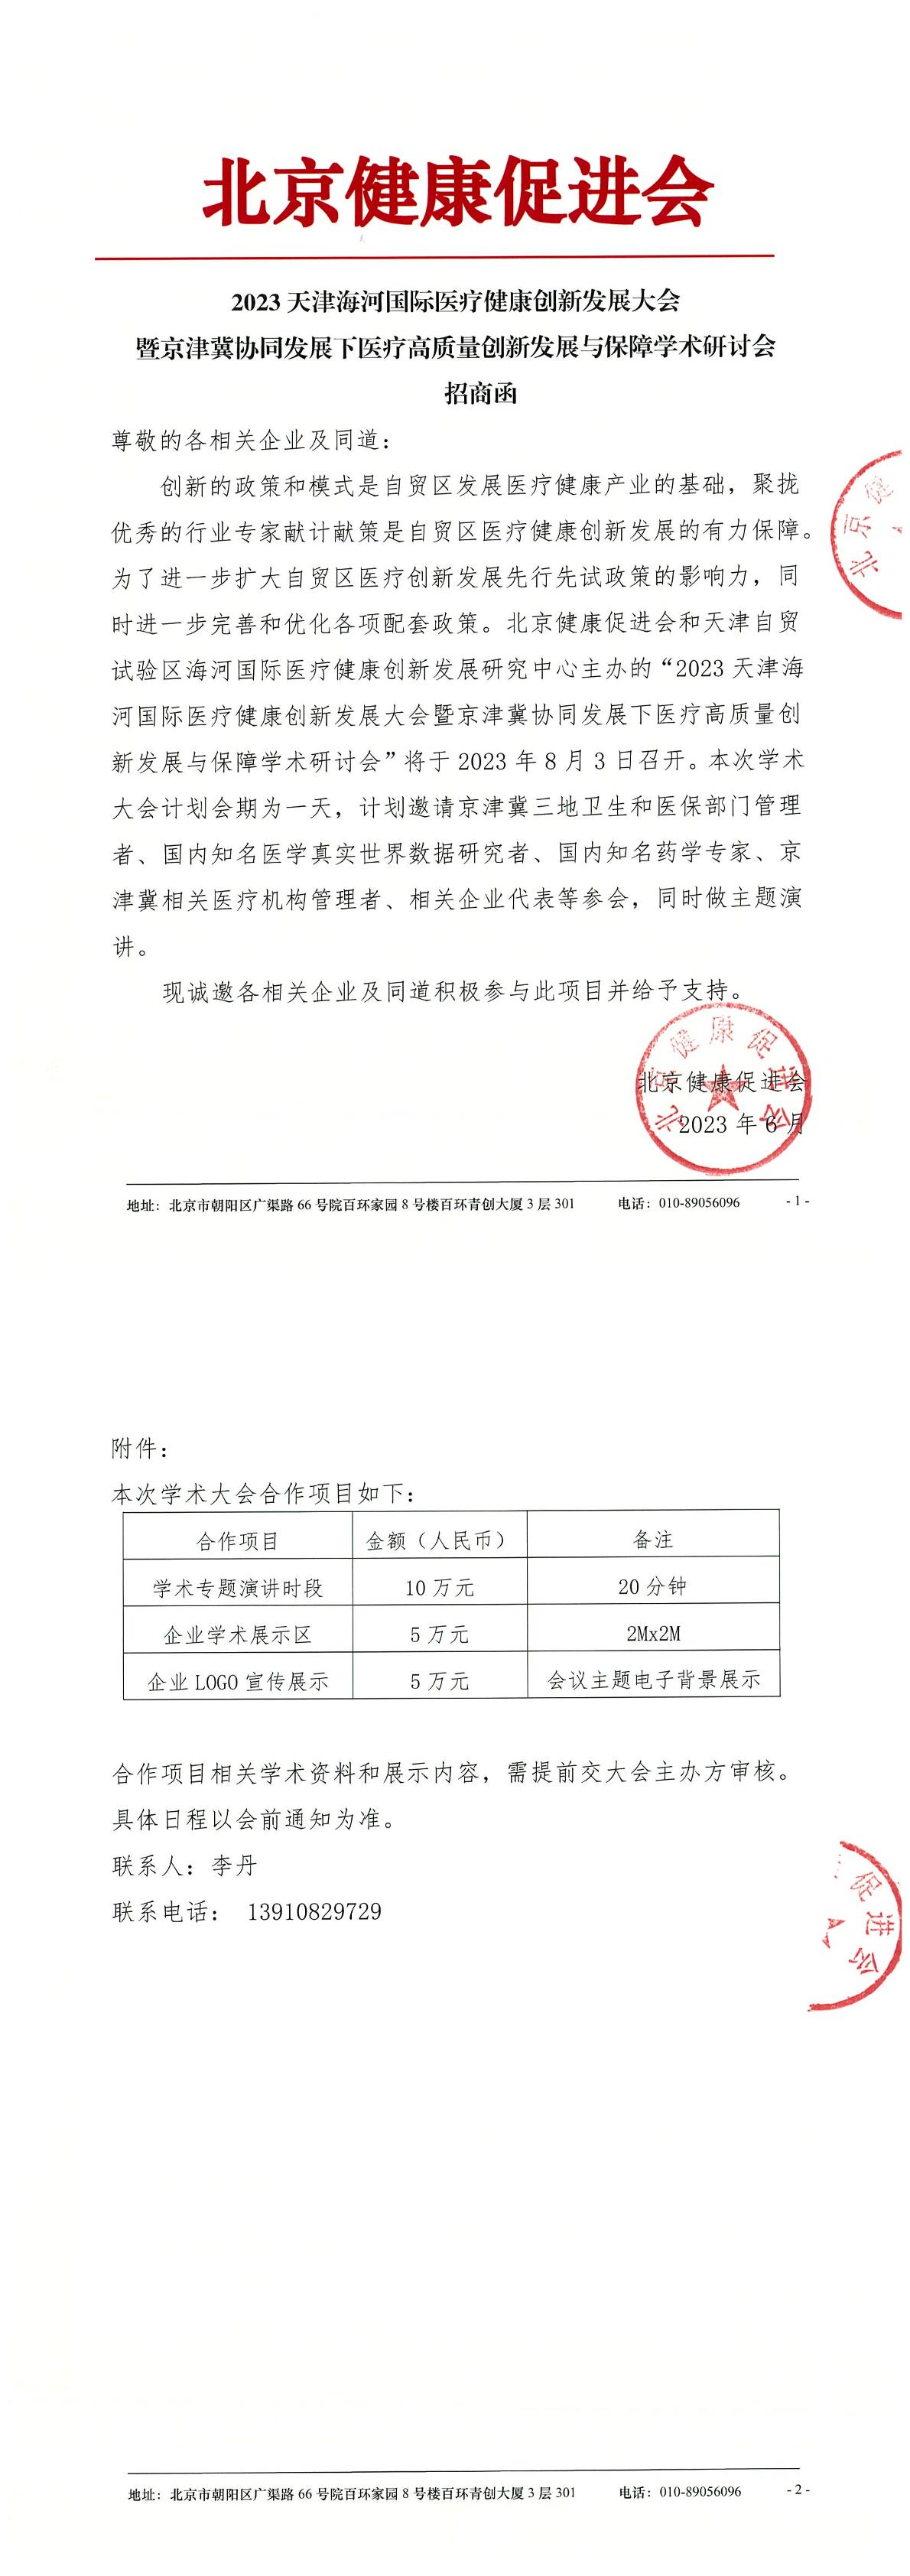 2023天津海河国际医疗健康创新发展大会-招商函-1.jpg